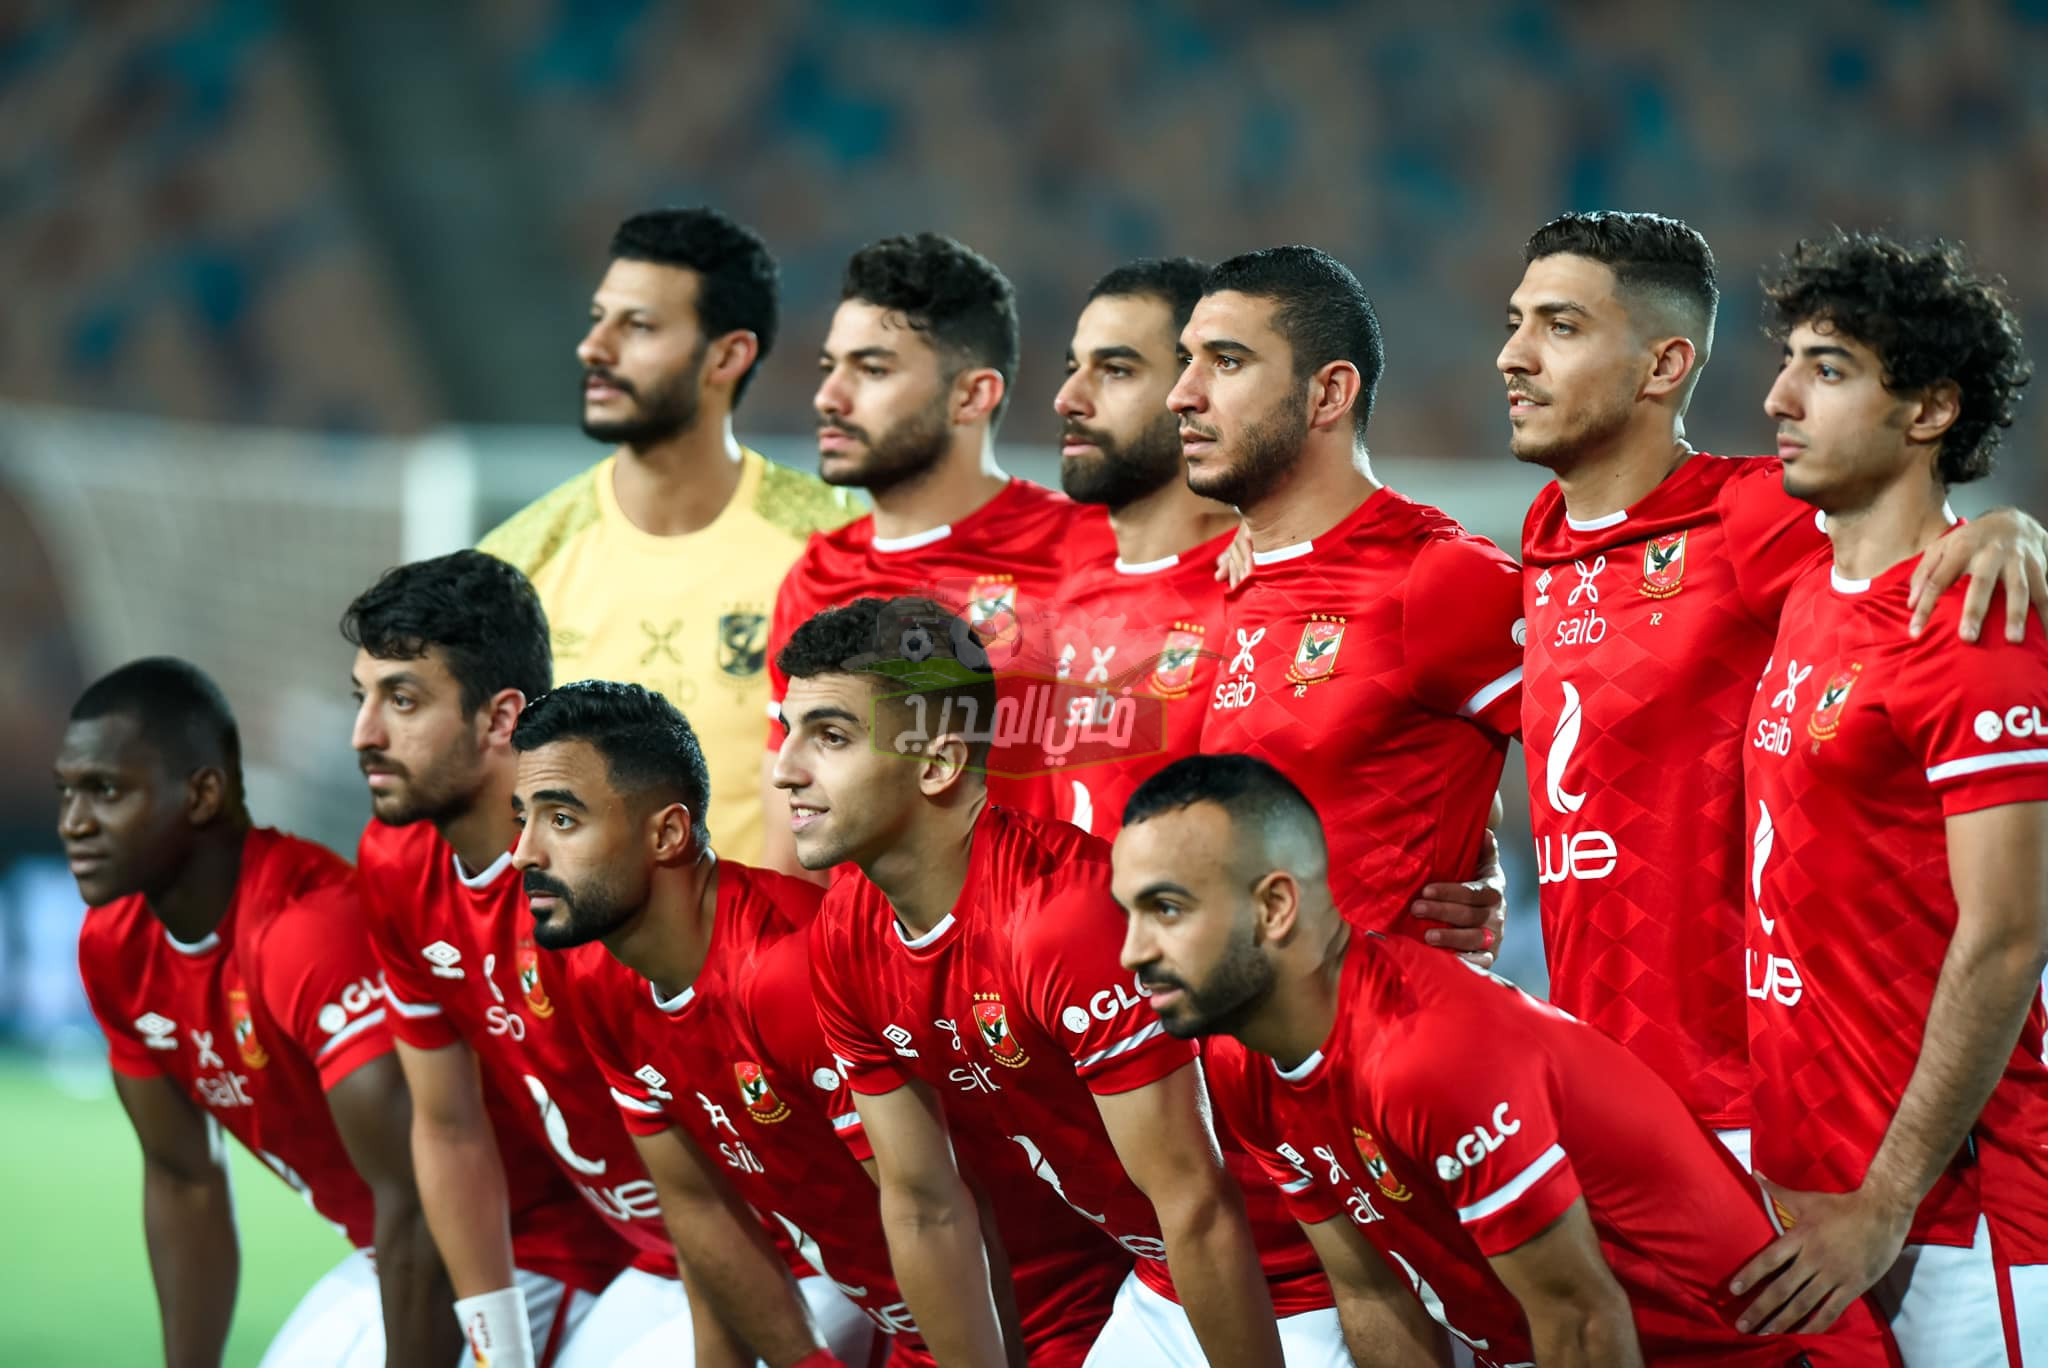 موعد مباراة الأهلي وبتروجيت في نصف نهائي كأس مصر موسم 2020-2021